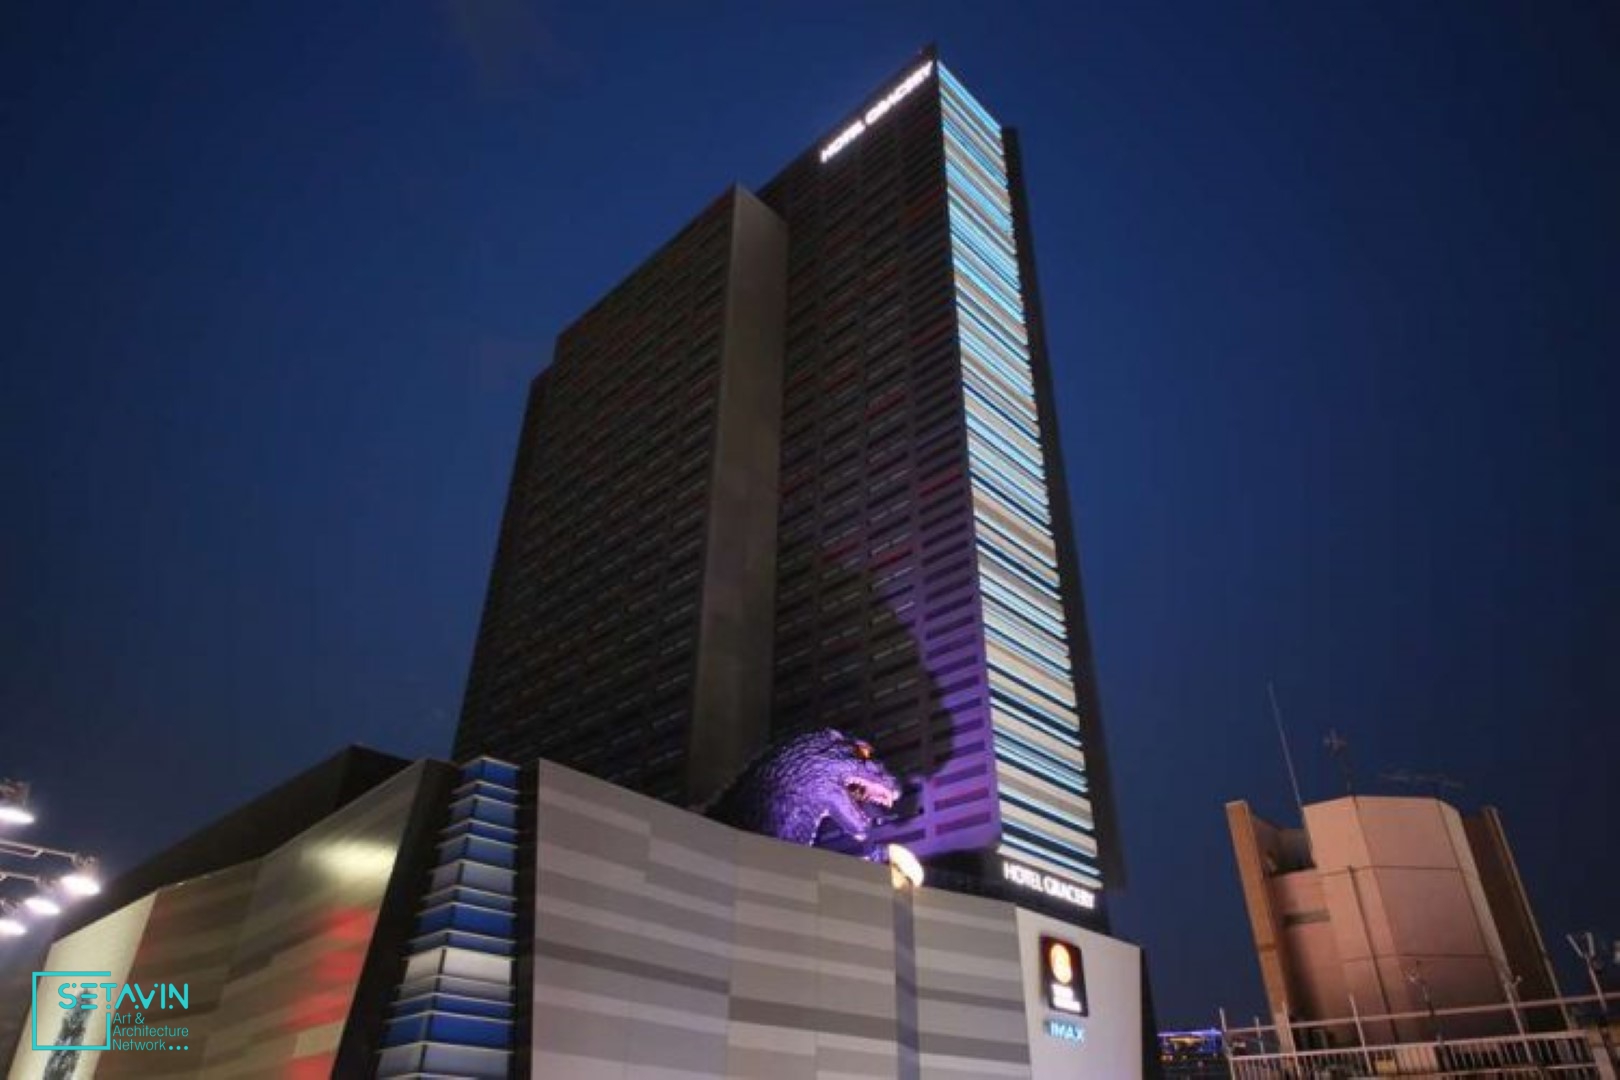 هتل Gracery Shinjuku ، هتلی با طرحی غیرعادی ، ژاپن ، هتل ، Gracery Shinjuku ، شبکه هنر و معماری ستاوین , شبکه هنر و معماری , ستاوین , هتل shinjuku , طراحی هتل , هتل عجیب ,